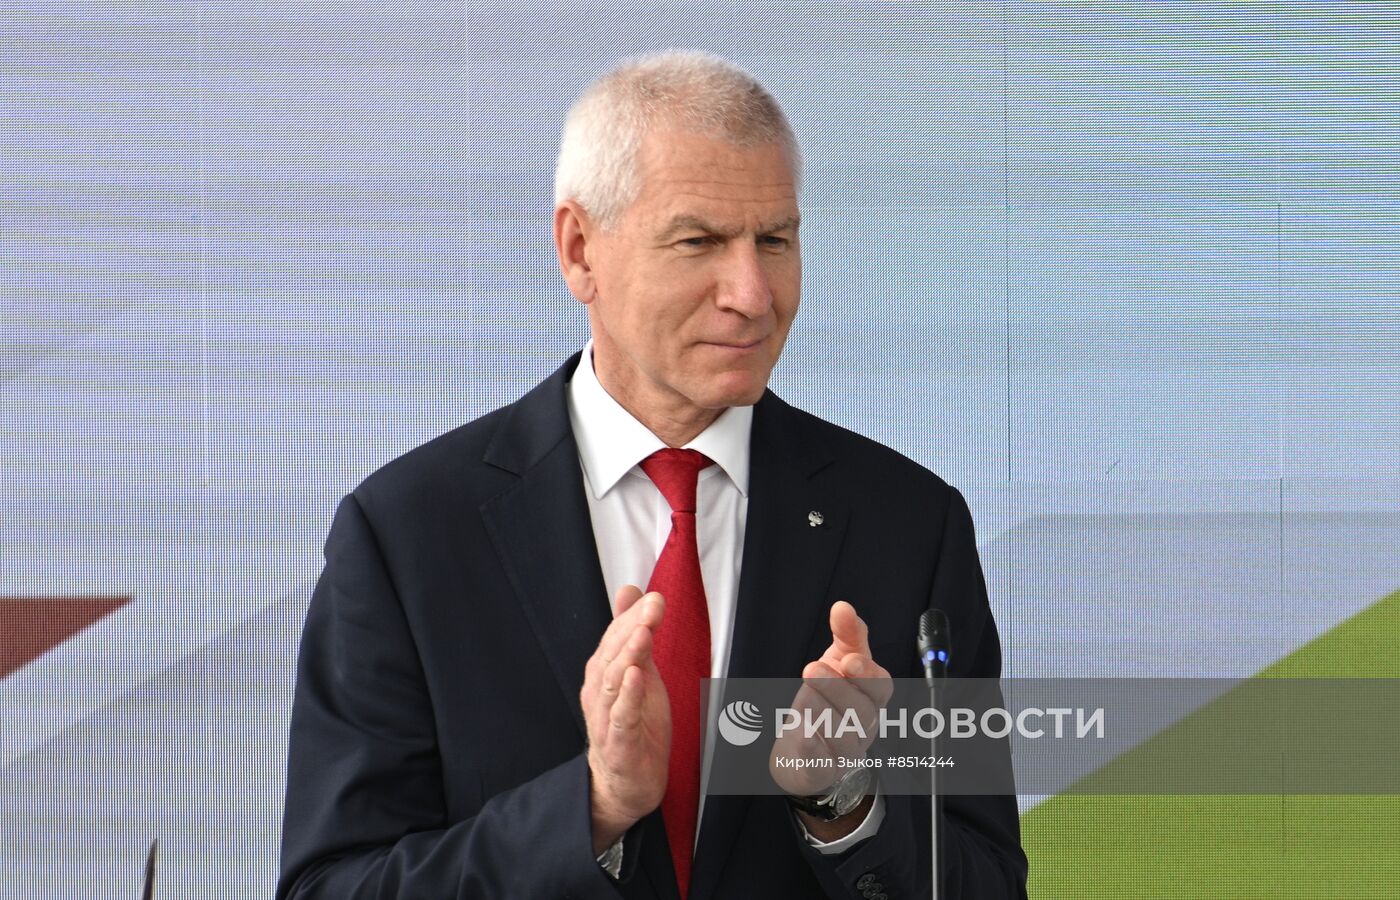 Подписание соглашения о сотрудничестве между Министерством спорта РФ и АО "РЭЦ"